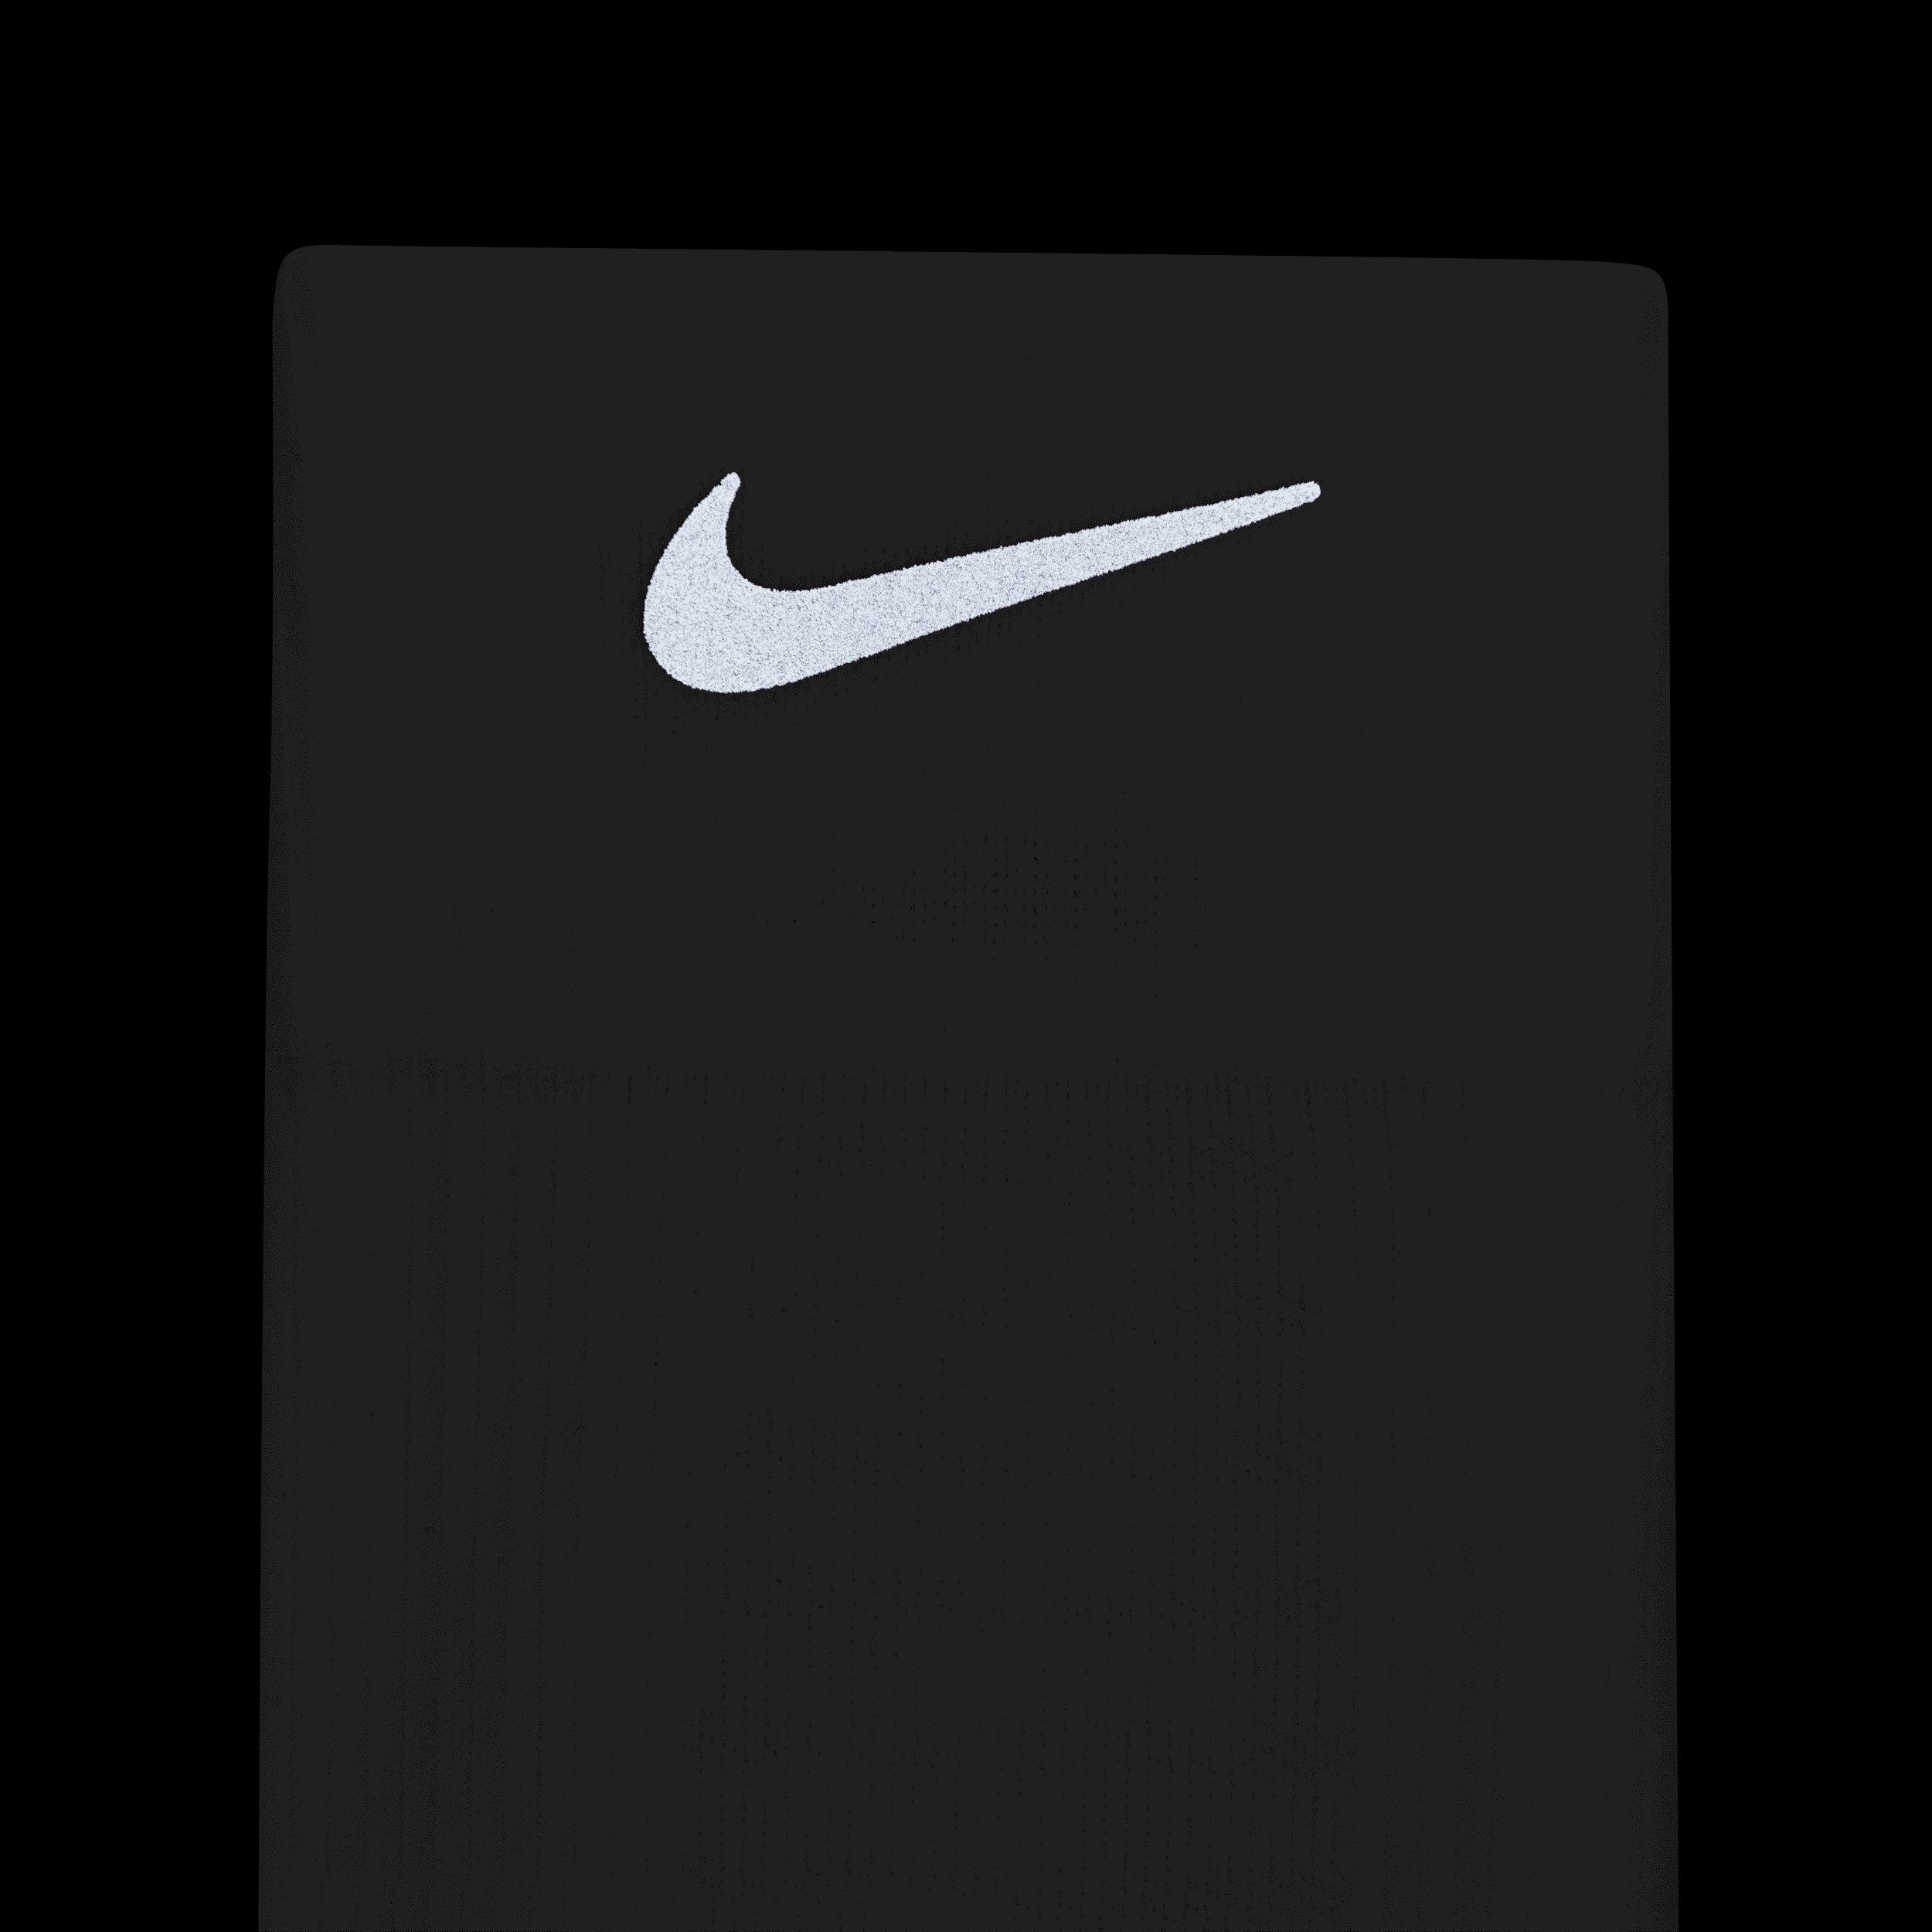 kreupel Steil schelp Nike Spark Lightweight Over-the-calf Compression Running Socks in White |  Lyst